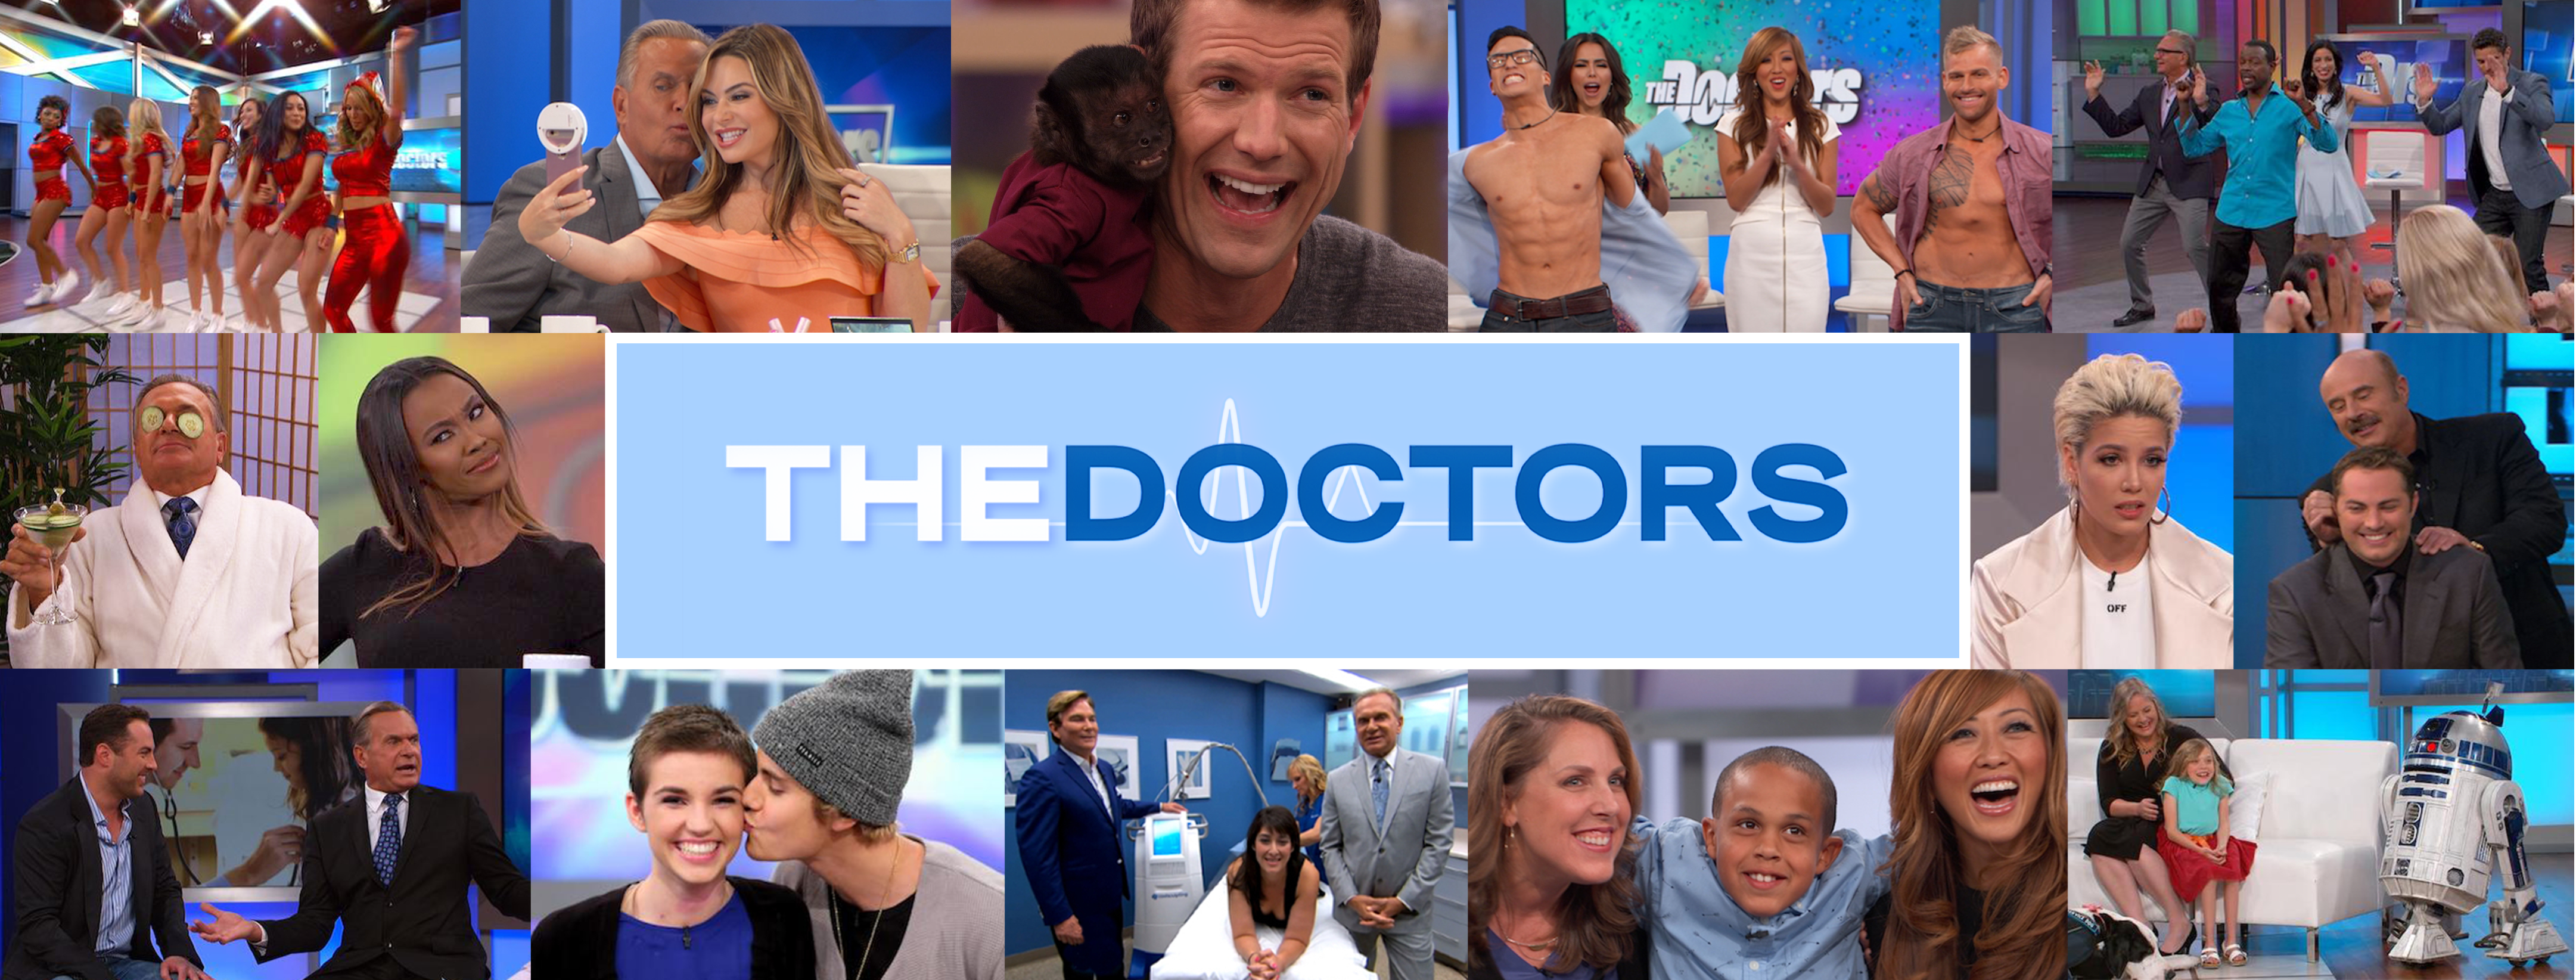 tandlæge Vejnavn tale Plus-Size Model Hunter McGrady Shares Her Journey | The Doctors TV Show